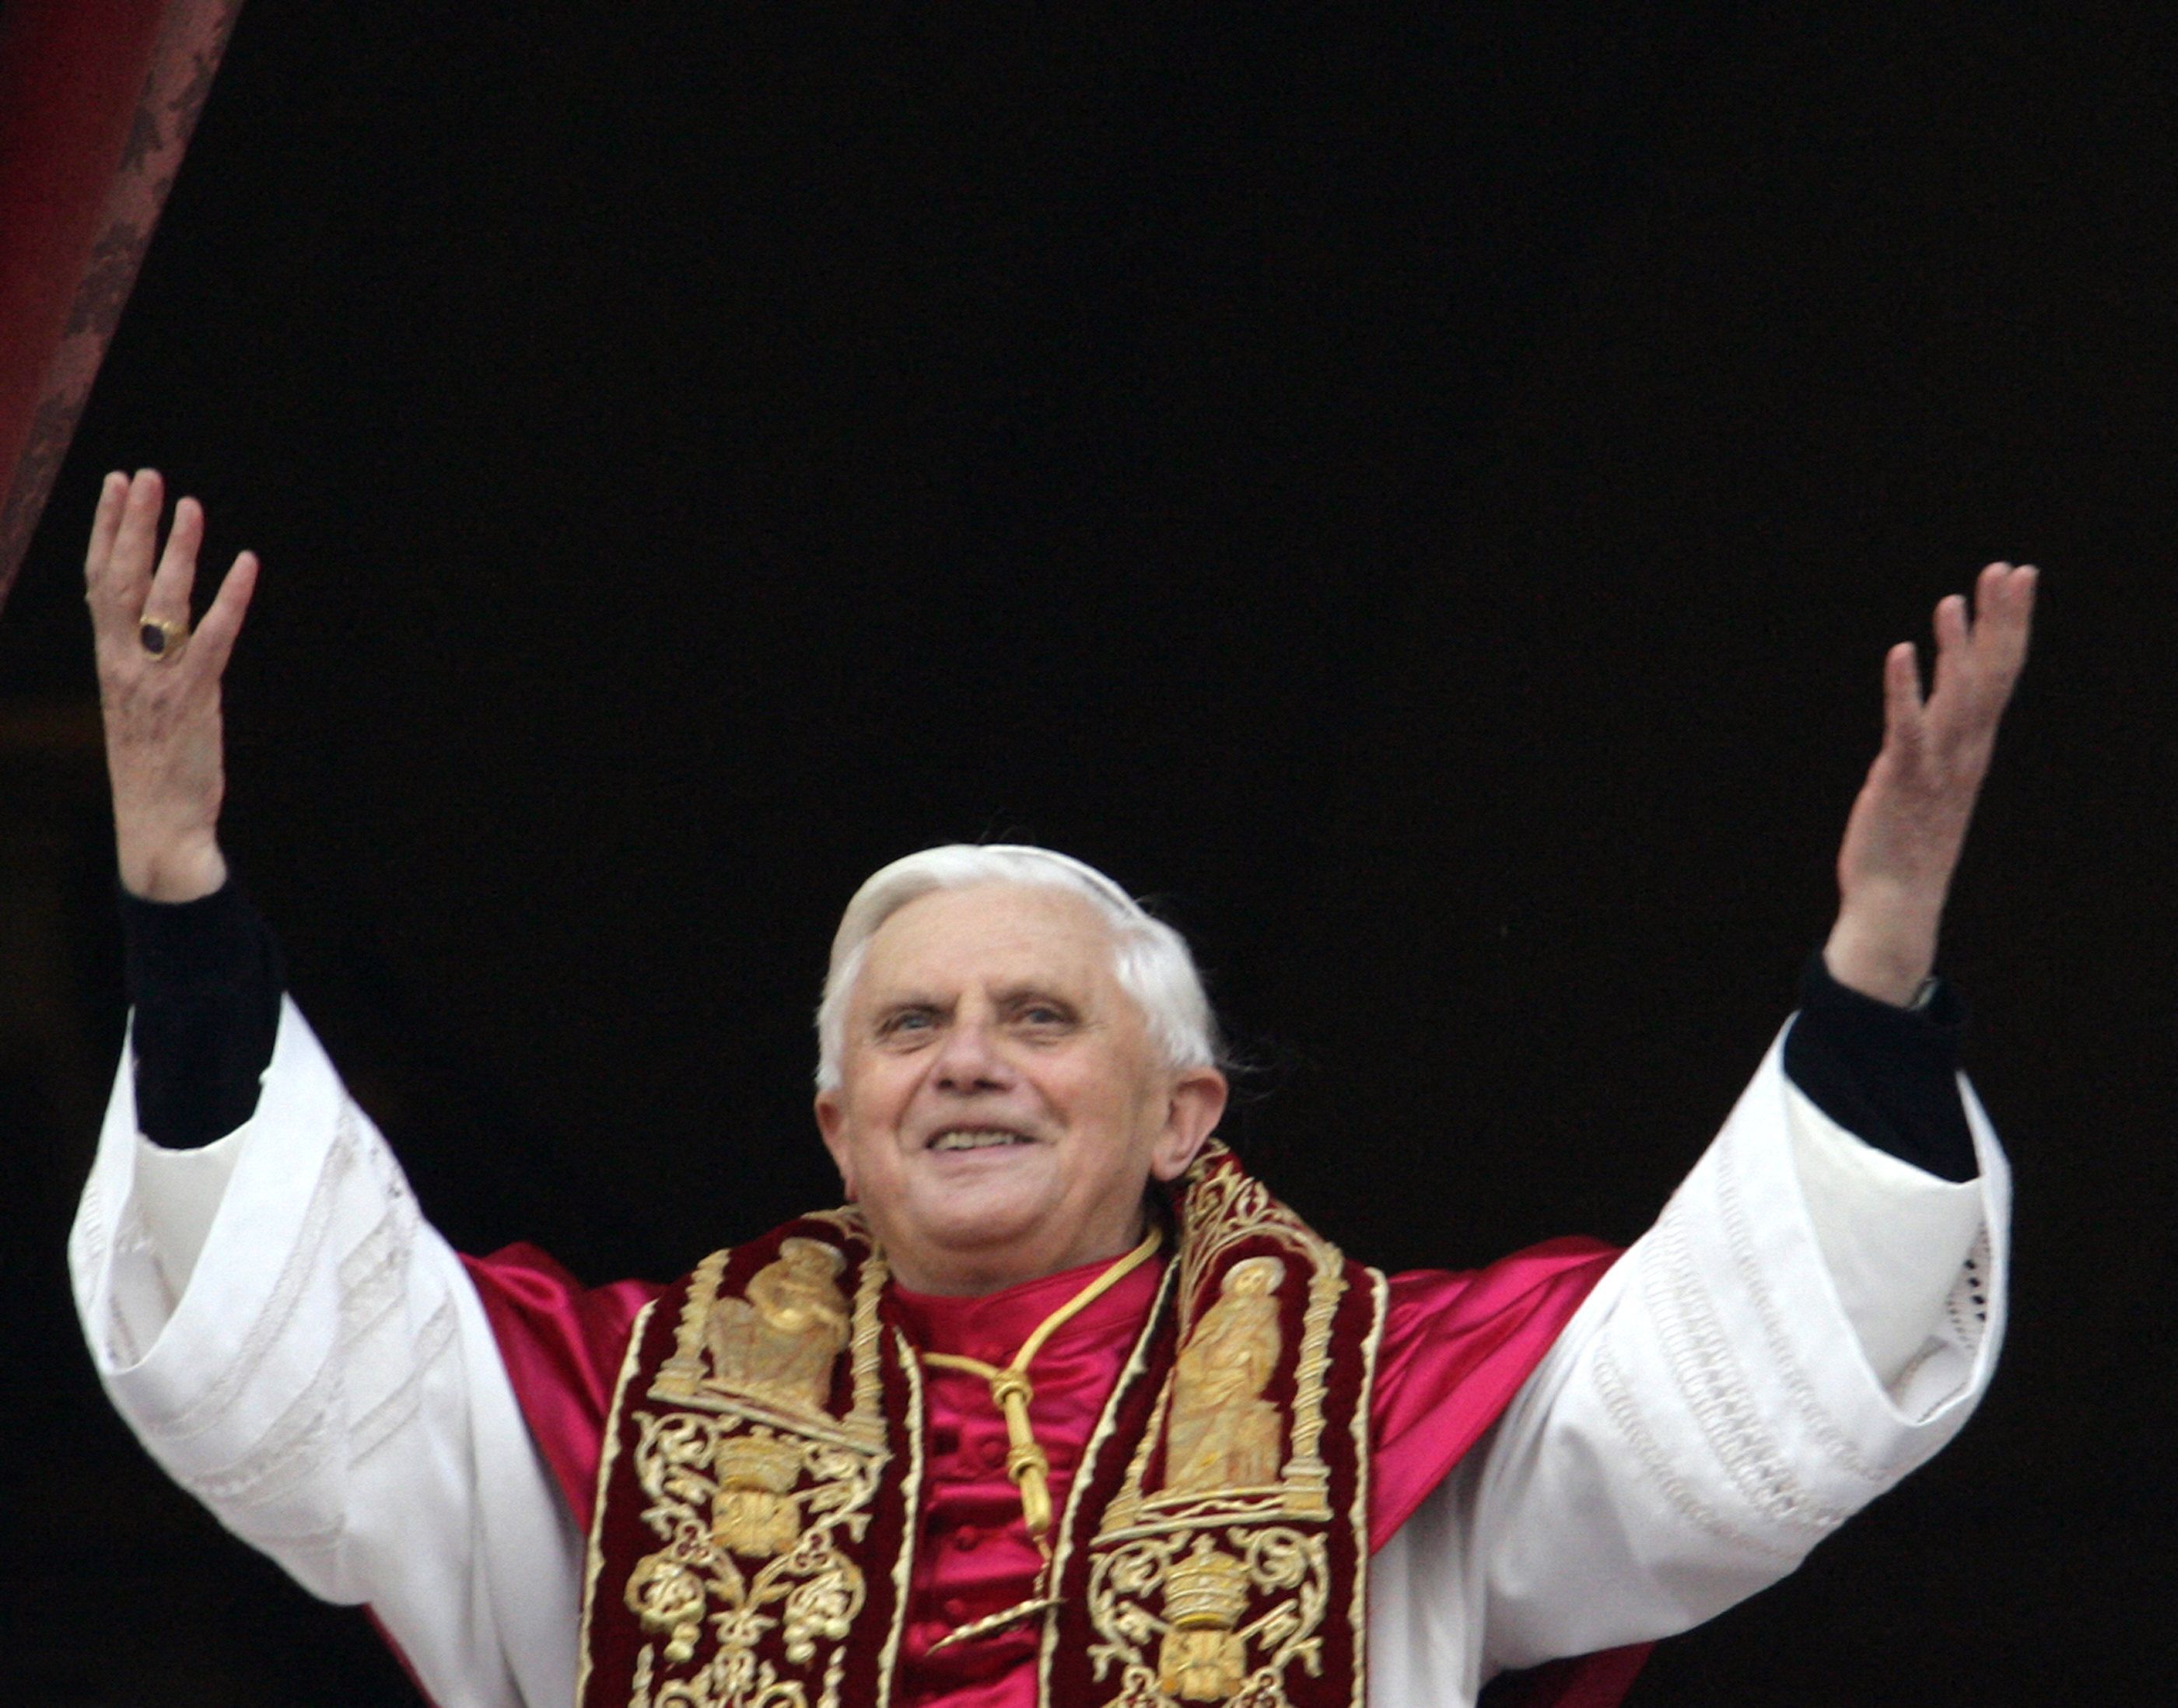 Papst Benedikt XVI. erscheint am Fenster des Vatikan-Hauptbalkons, nachdem er zum Papst der römisch-katholischen Kirche gewählt wurde.